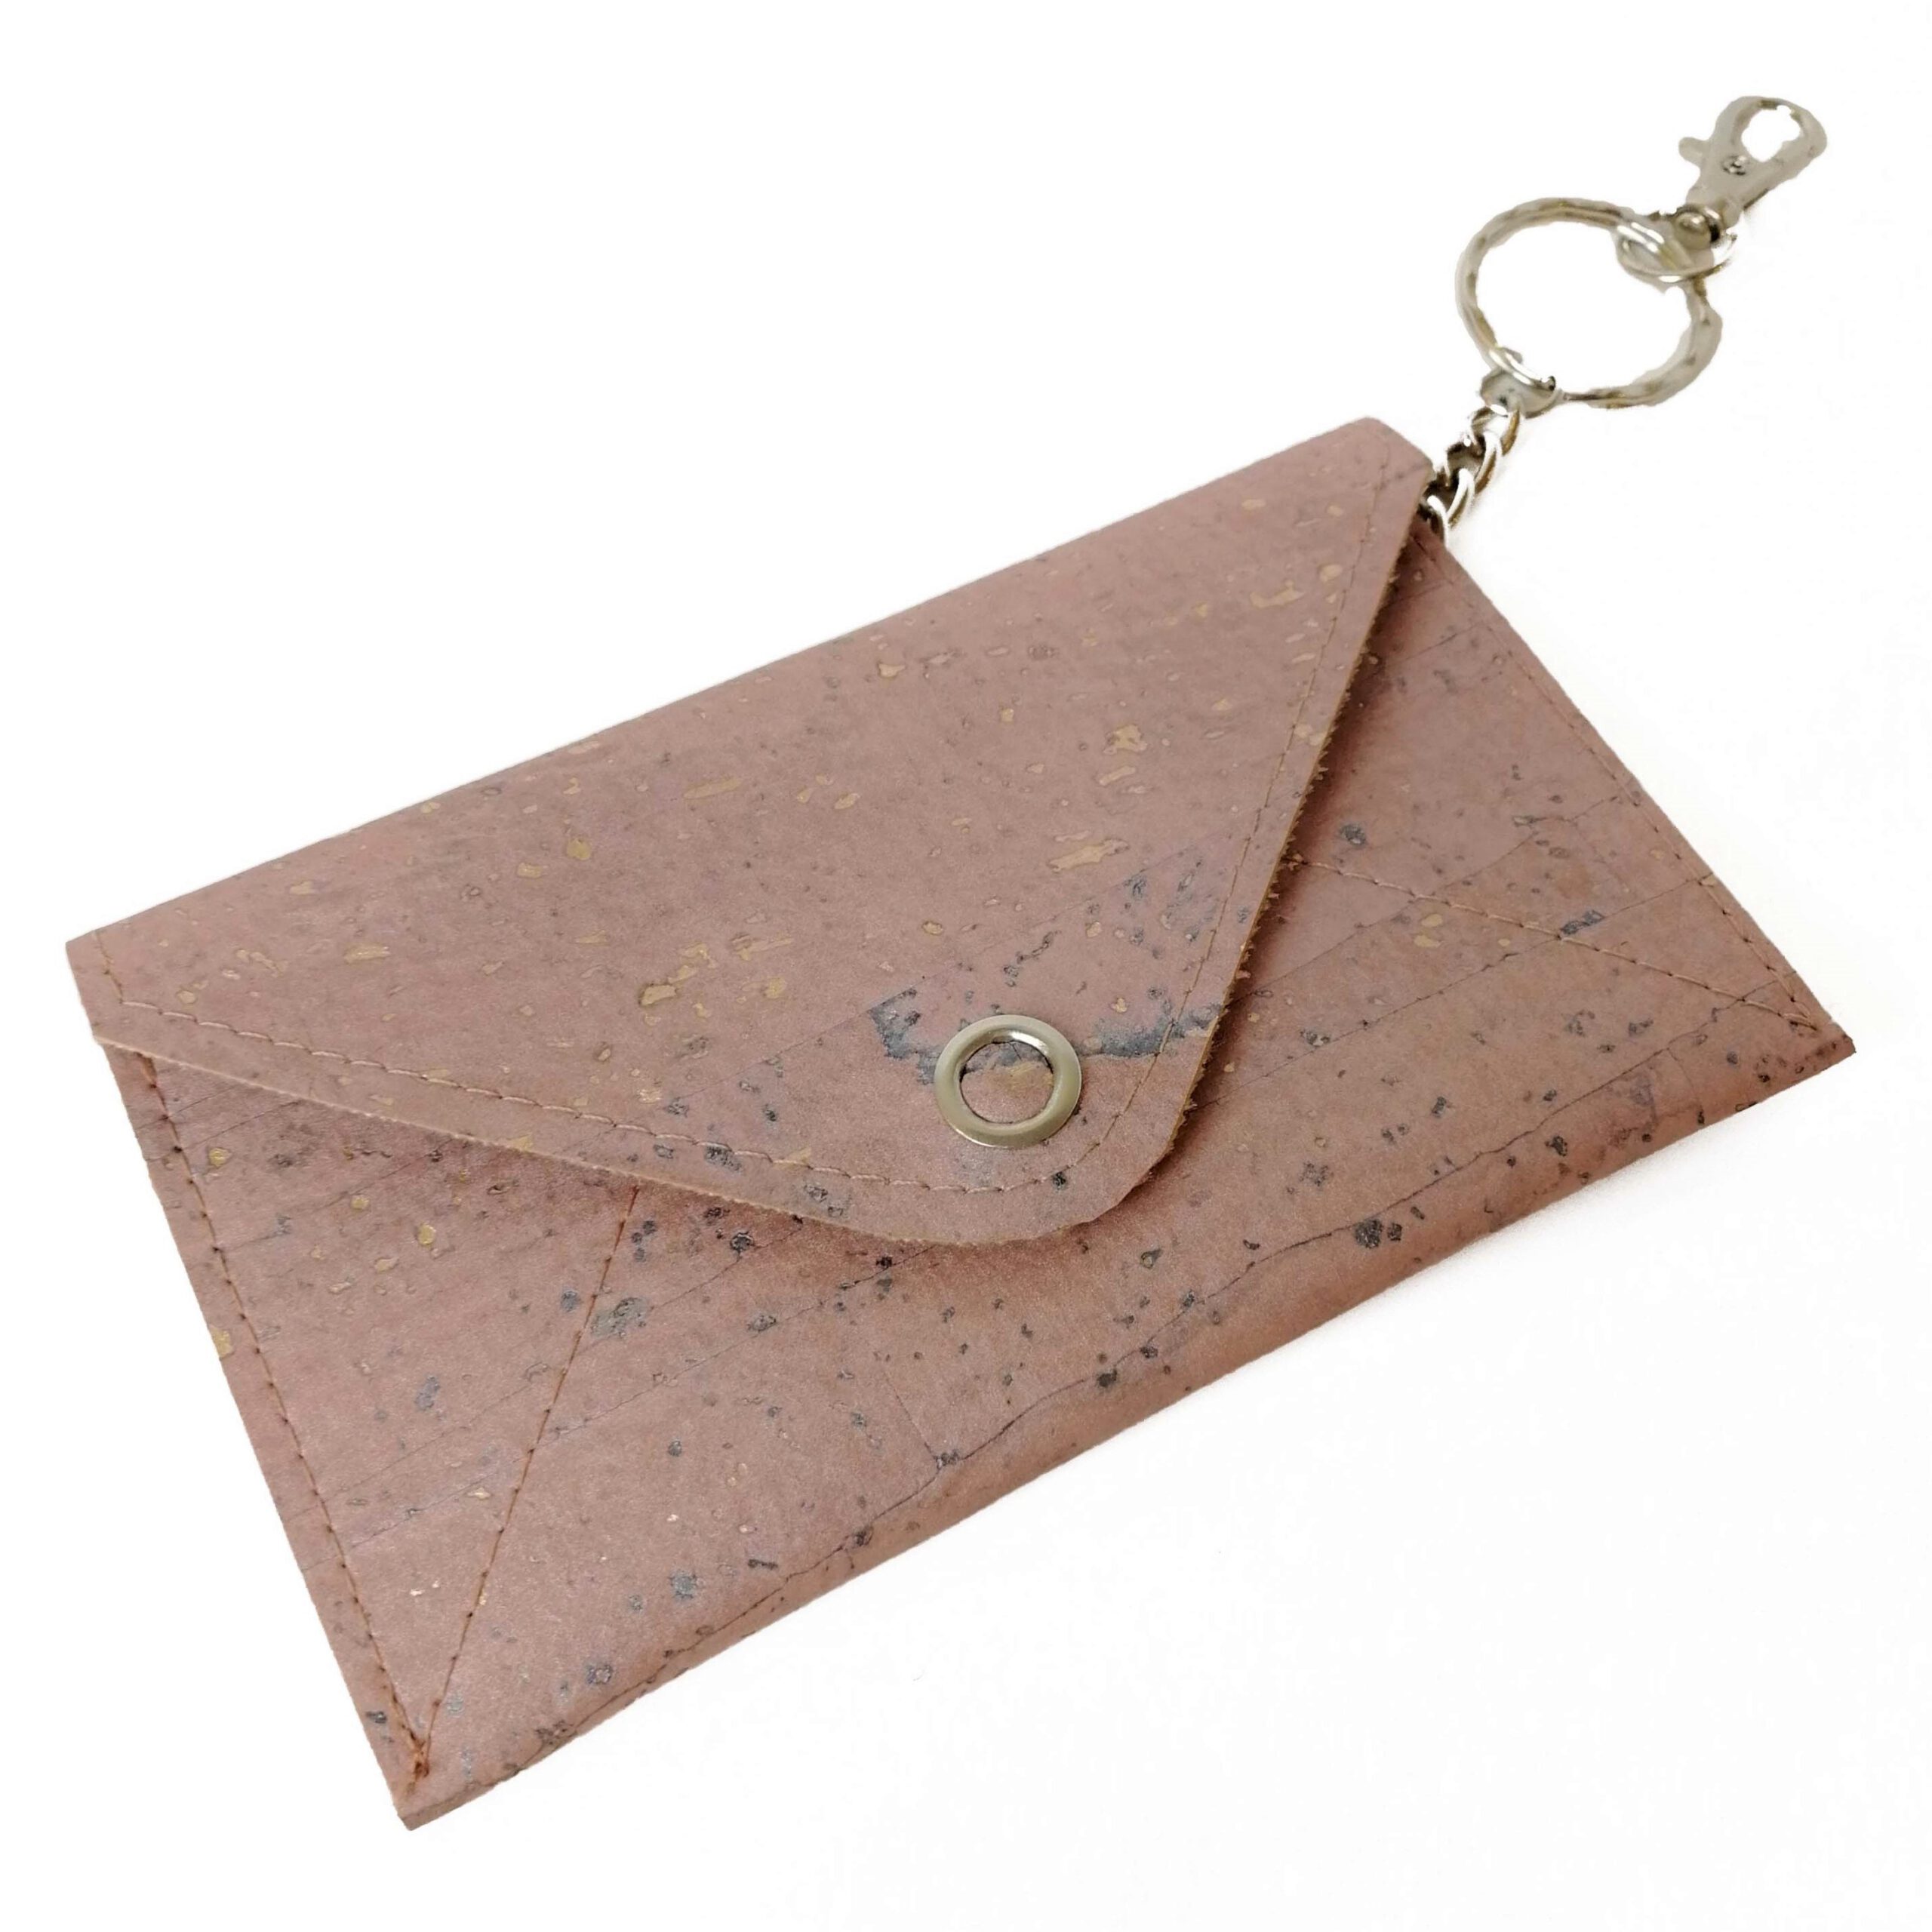 Kaufe Brieftaschenring mit Schlüsselanhänger, PU-Lederetui